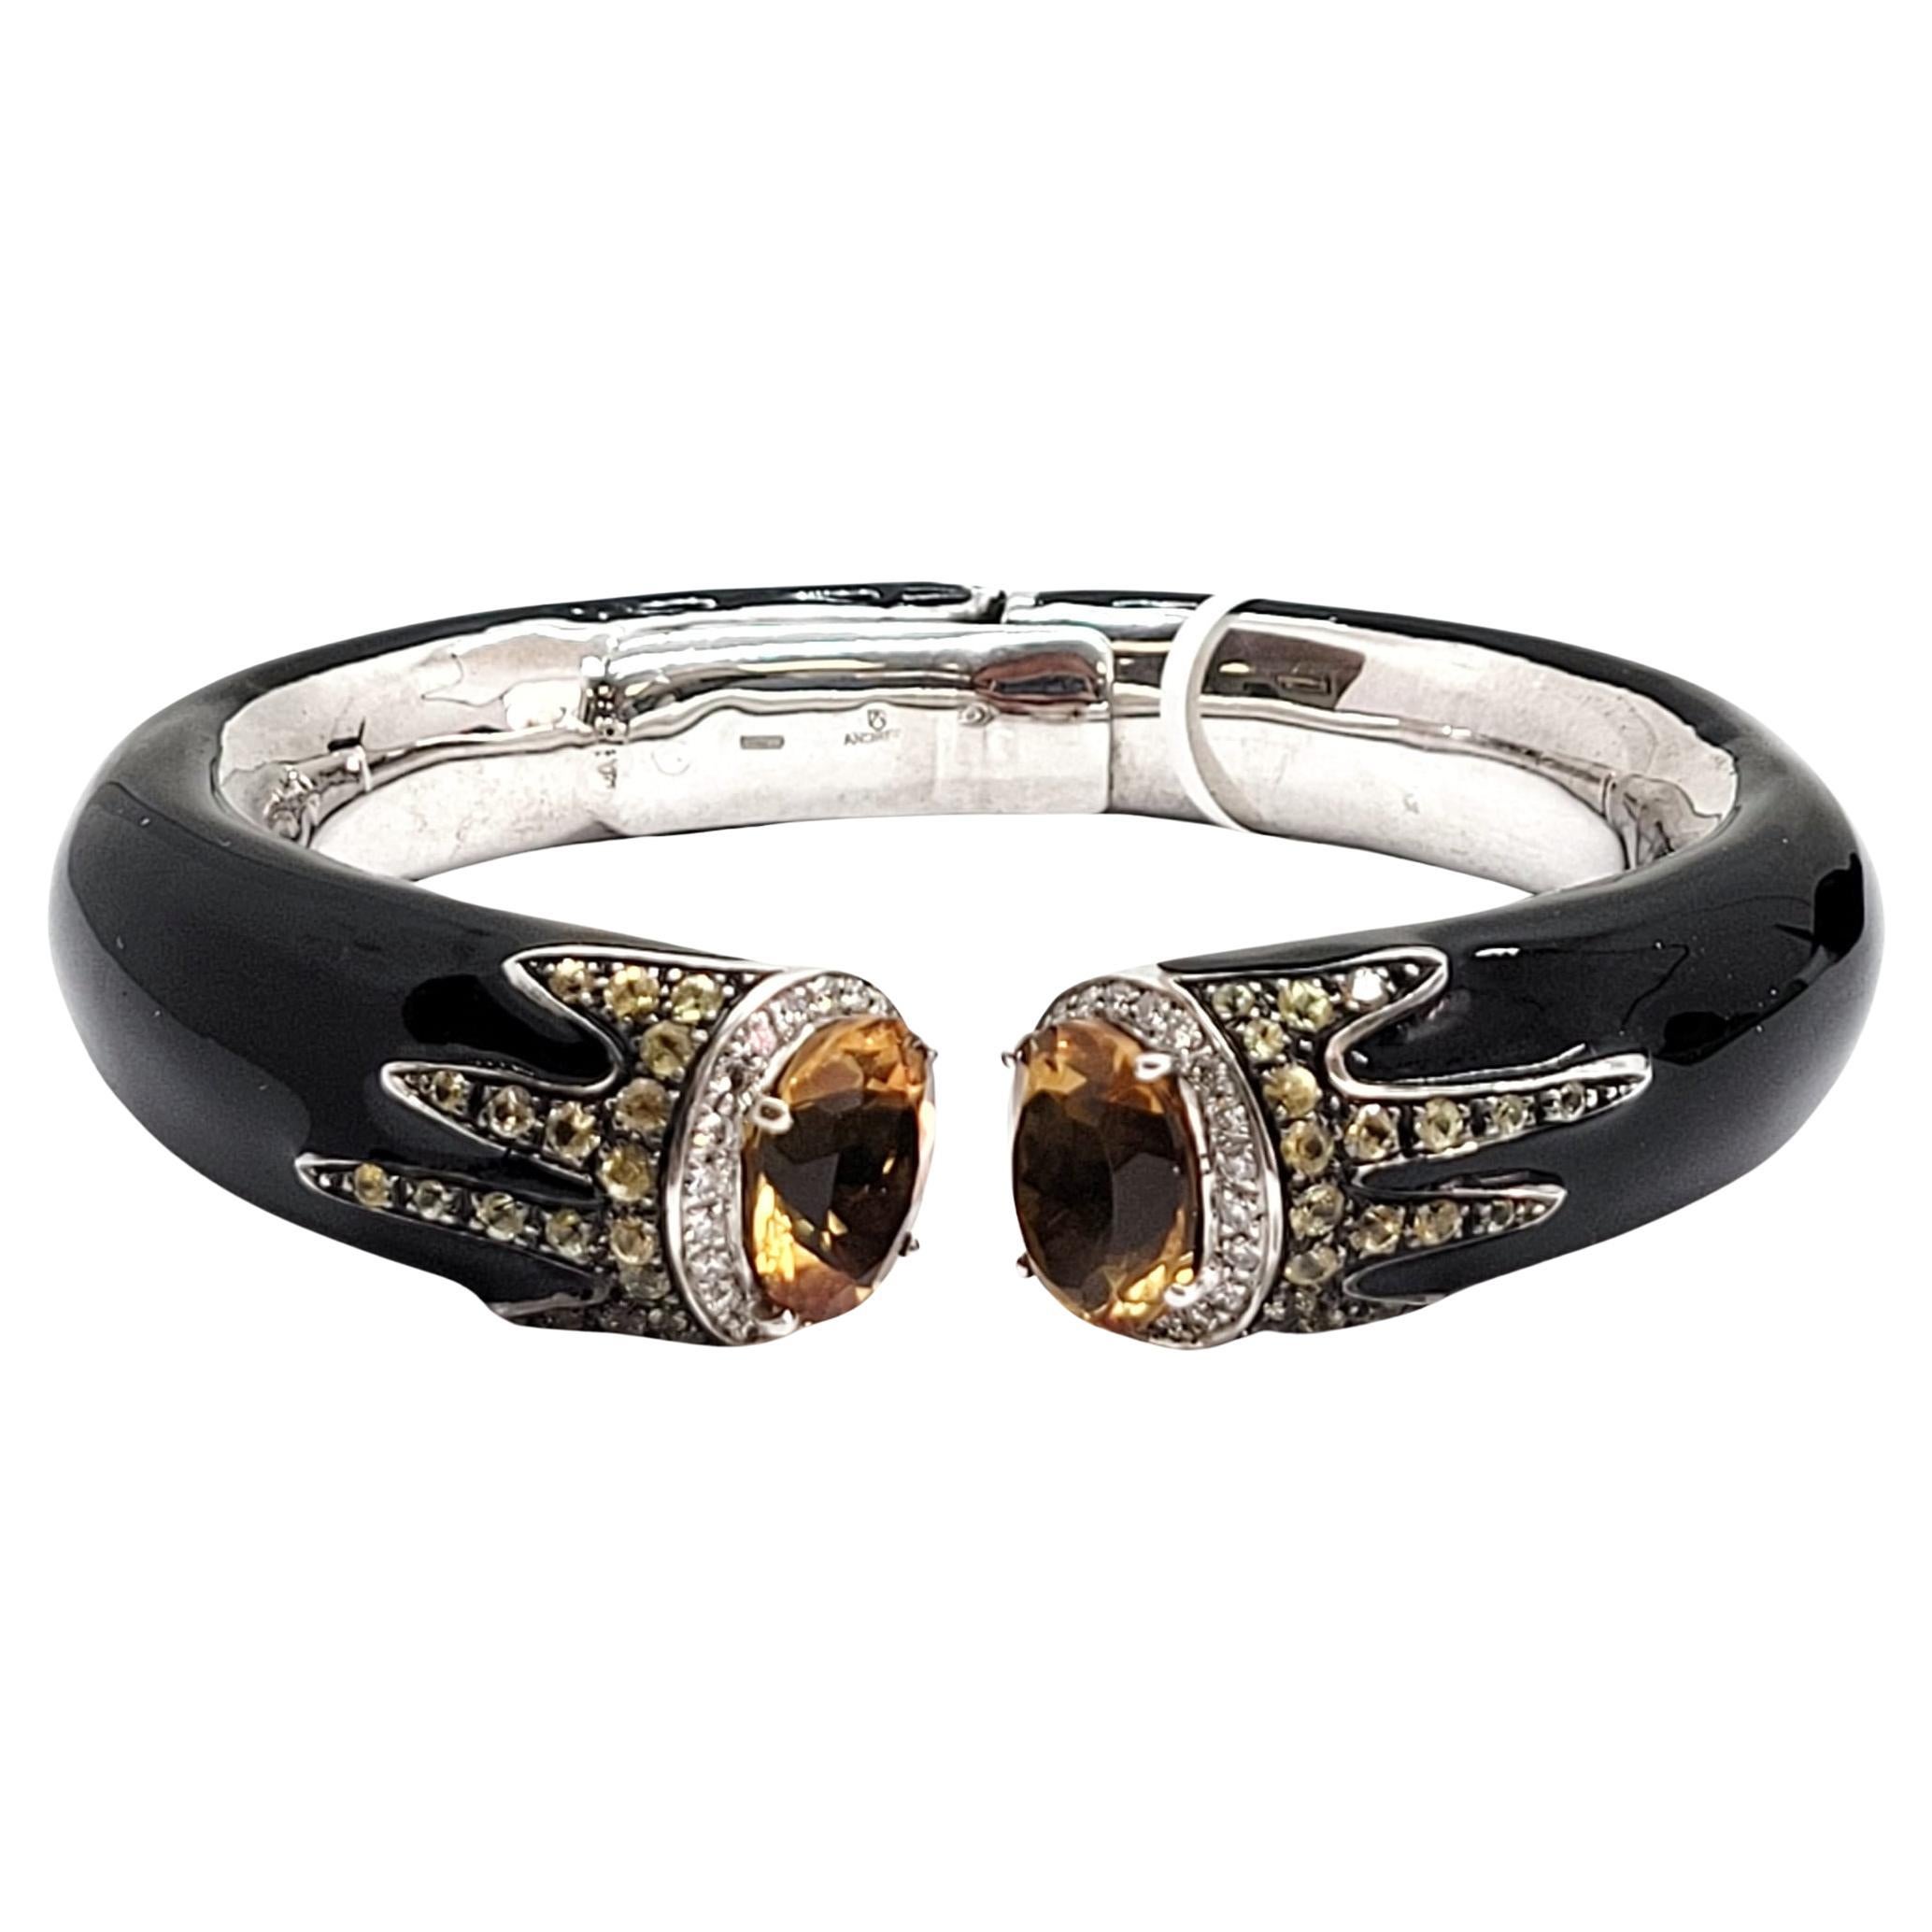 Andreoli Armband aus 18 Karat Gold und Silber mit Diamanten, Citrin, Saphiren und schwarzer Emaille